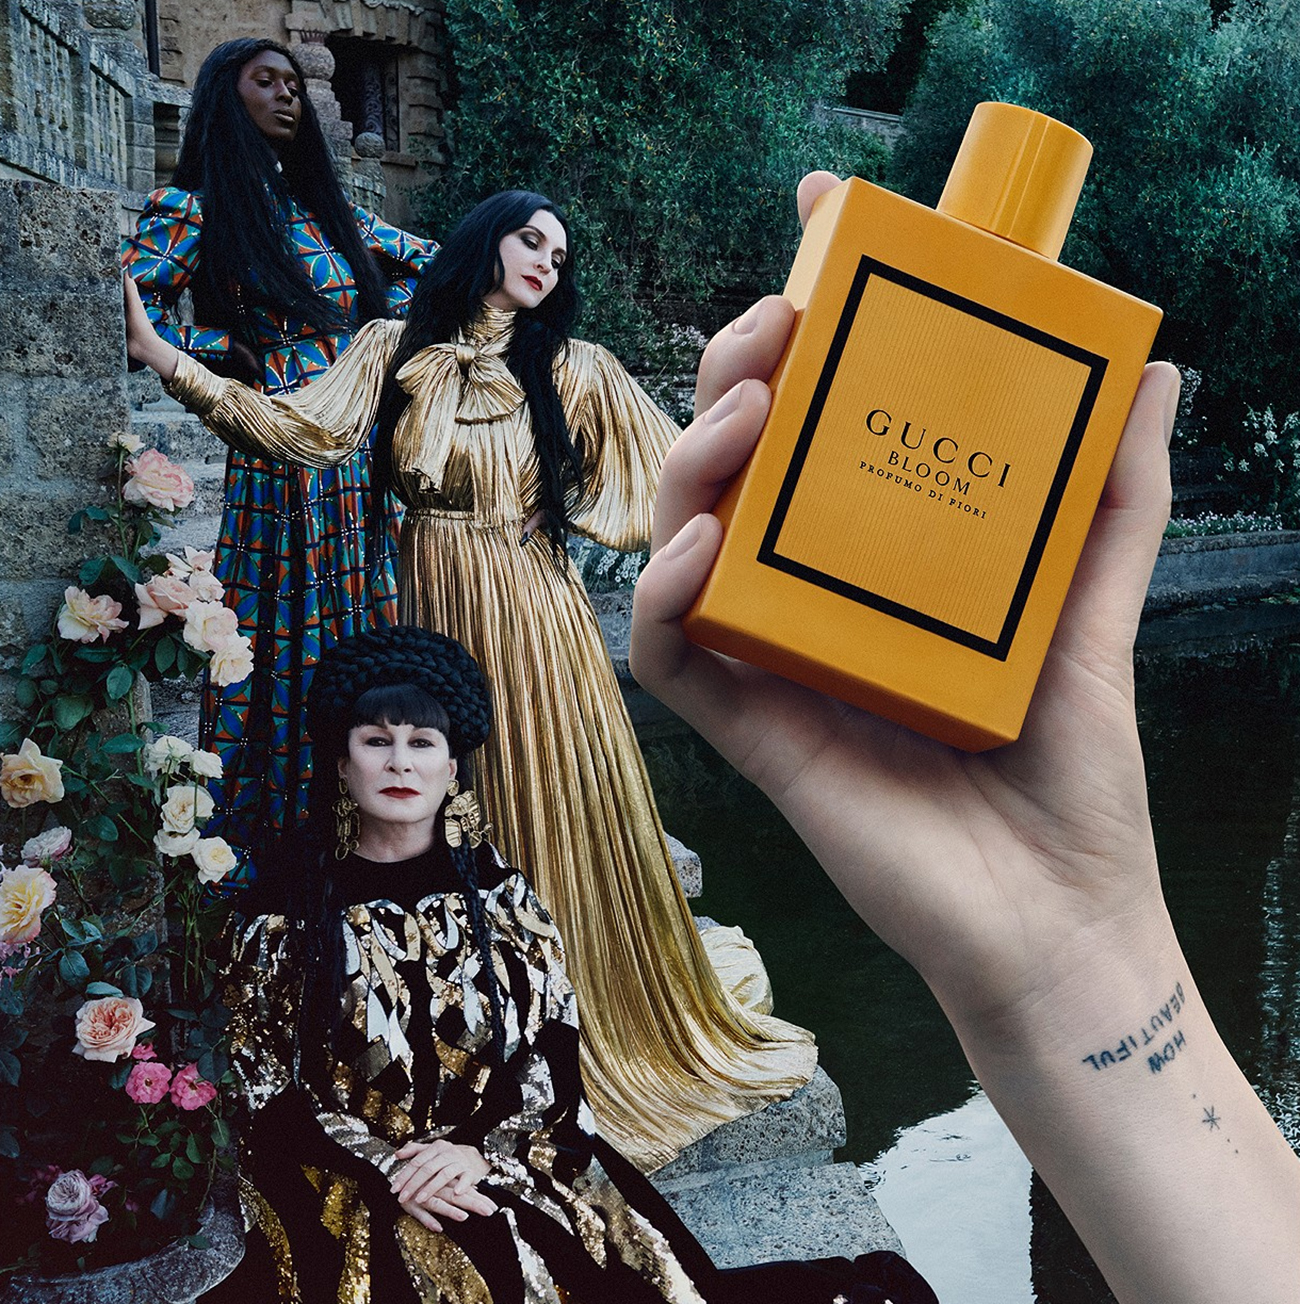 Gucci Bloom Profumo Di Fiori Gucci perfume - a new fragrance for women 2020